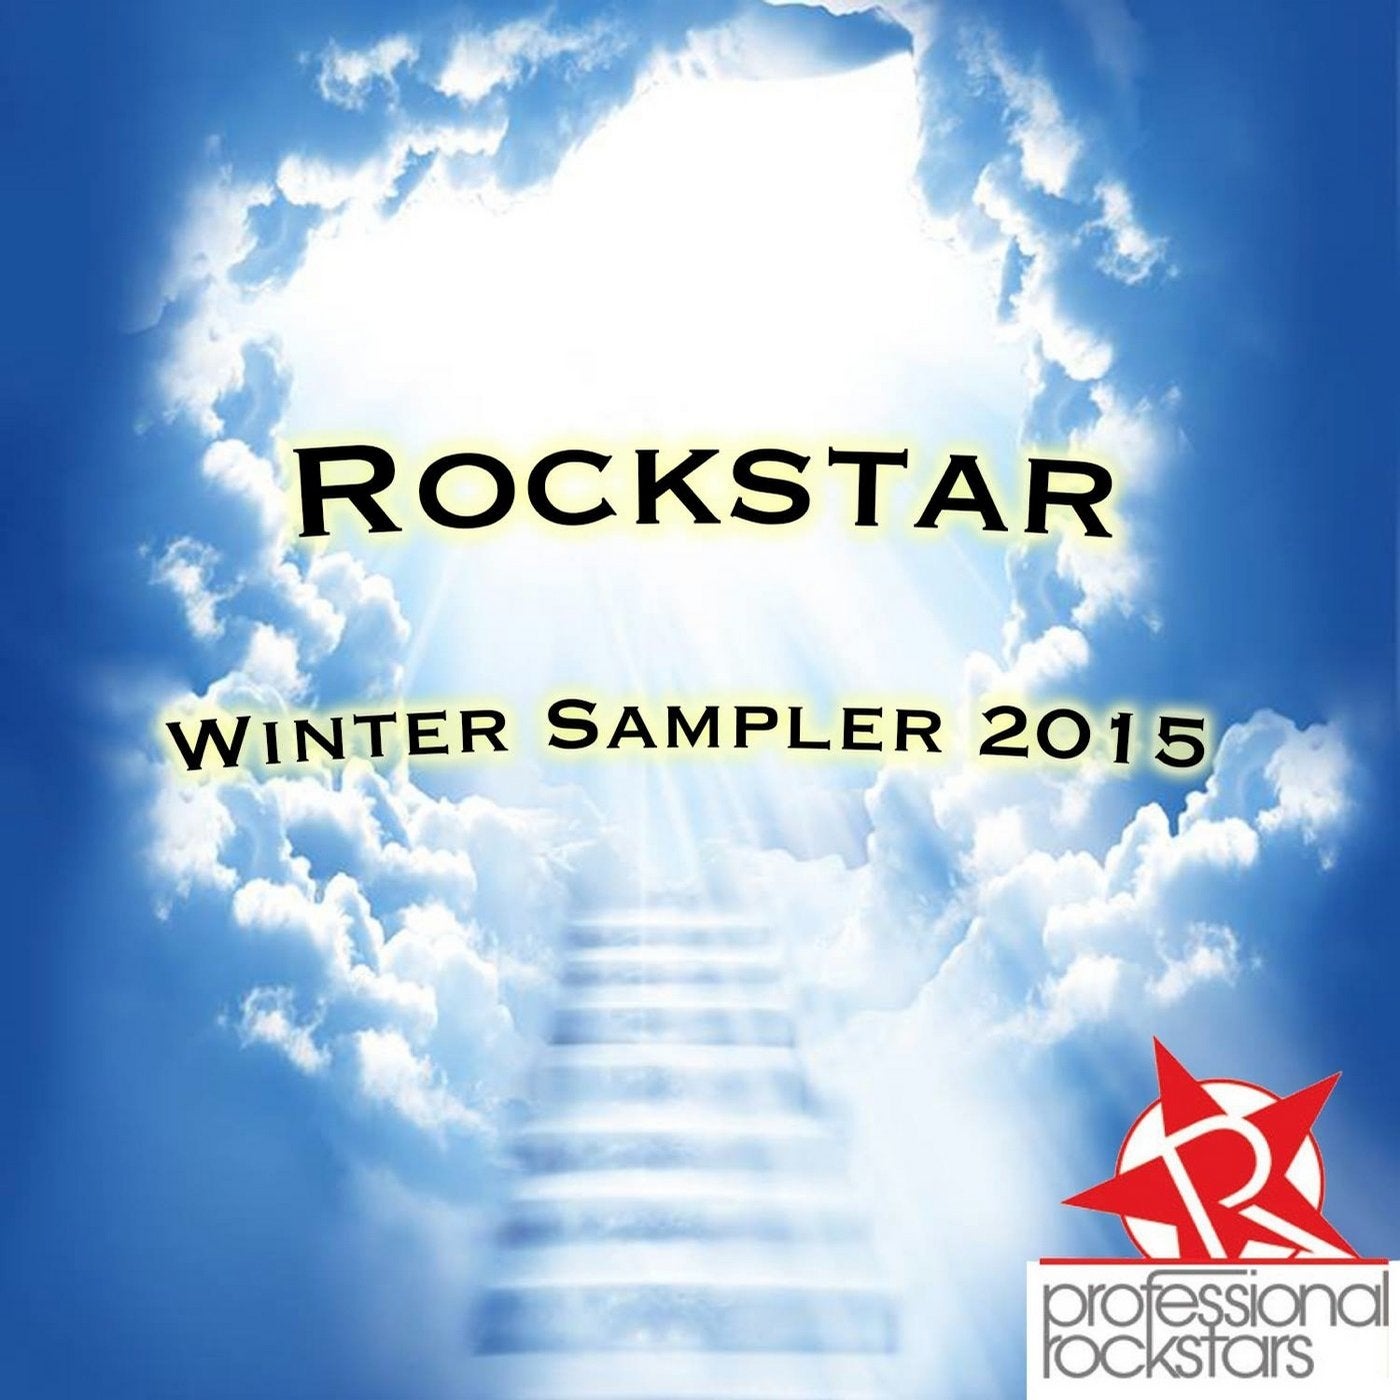 Rockstar Winter Sampler 2015